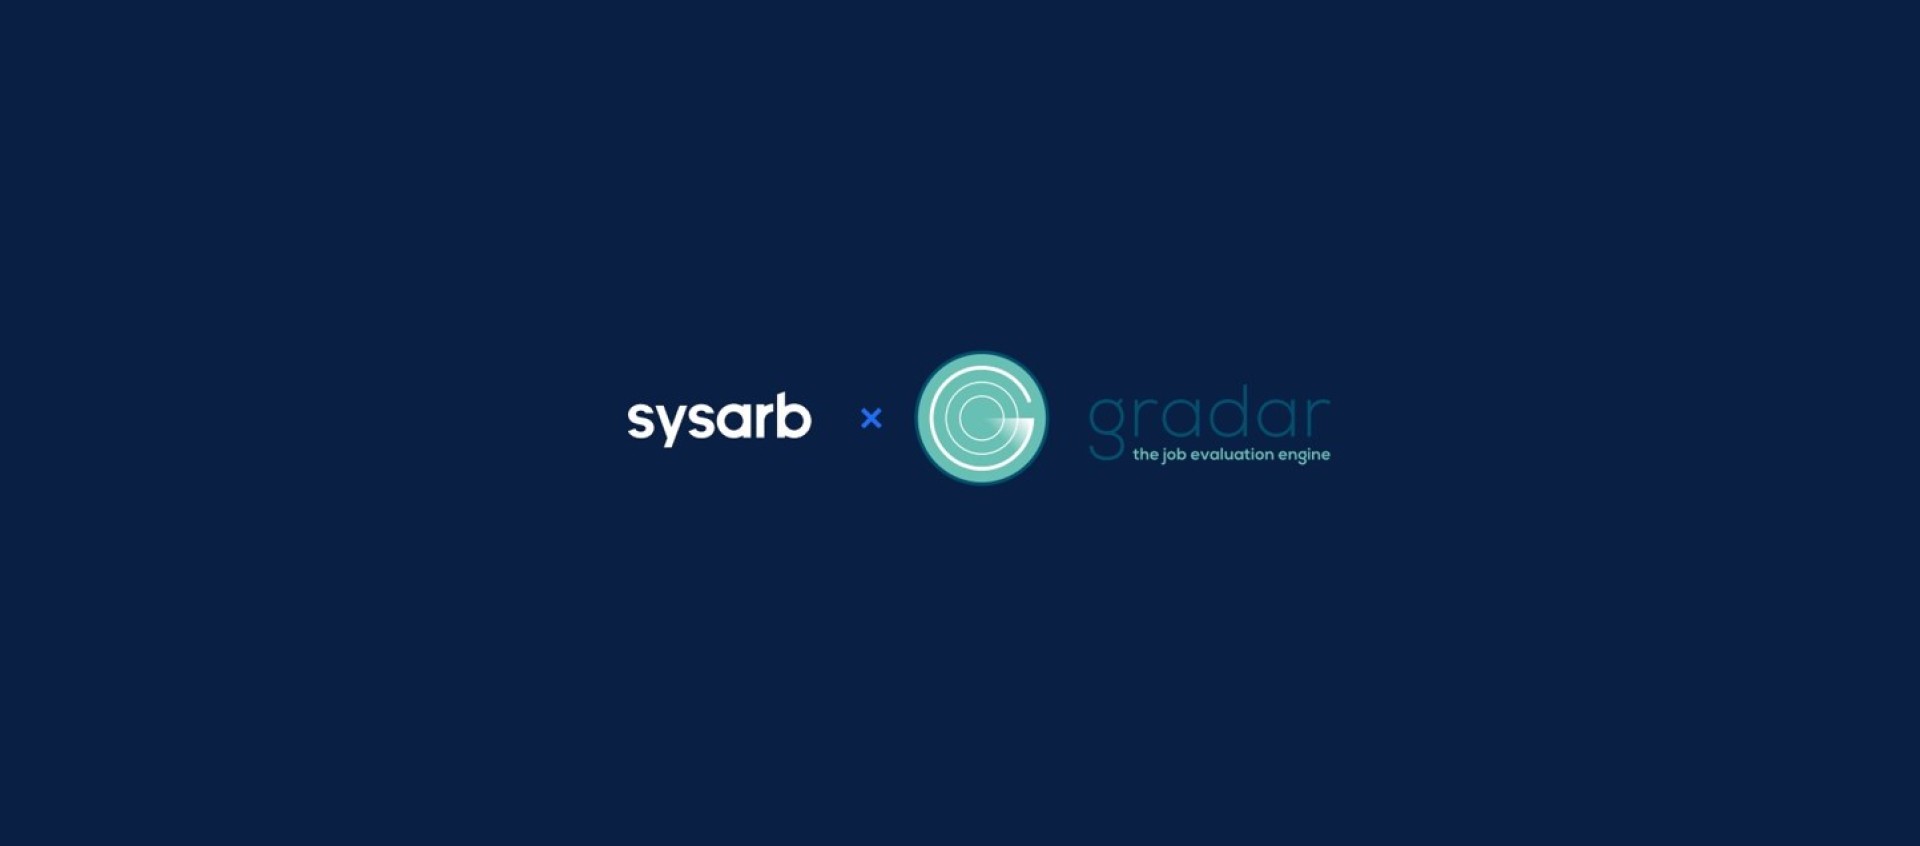 Sysarb and gradar